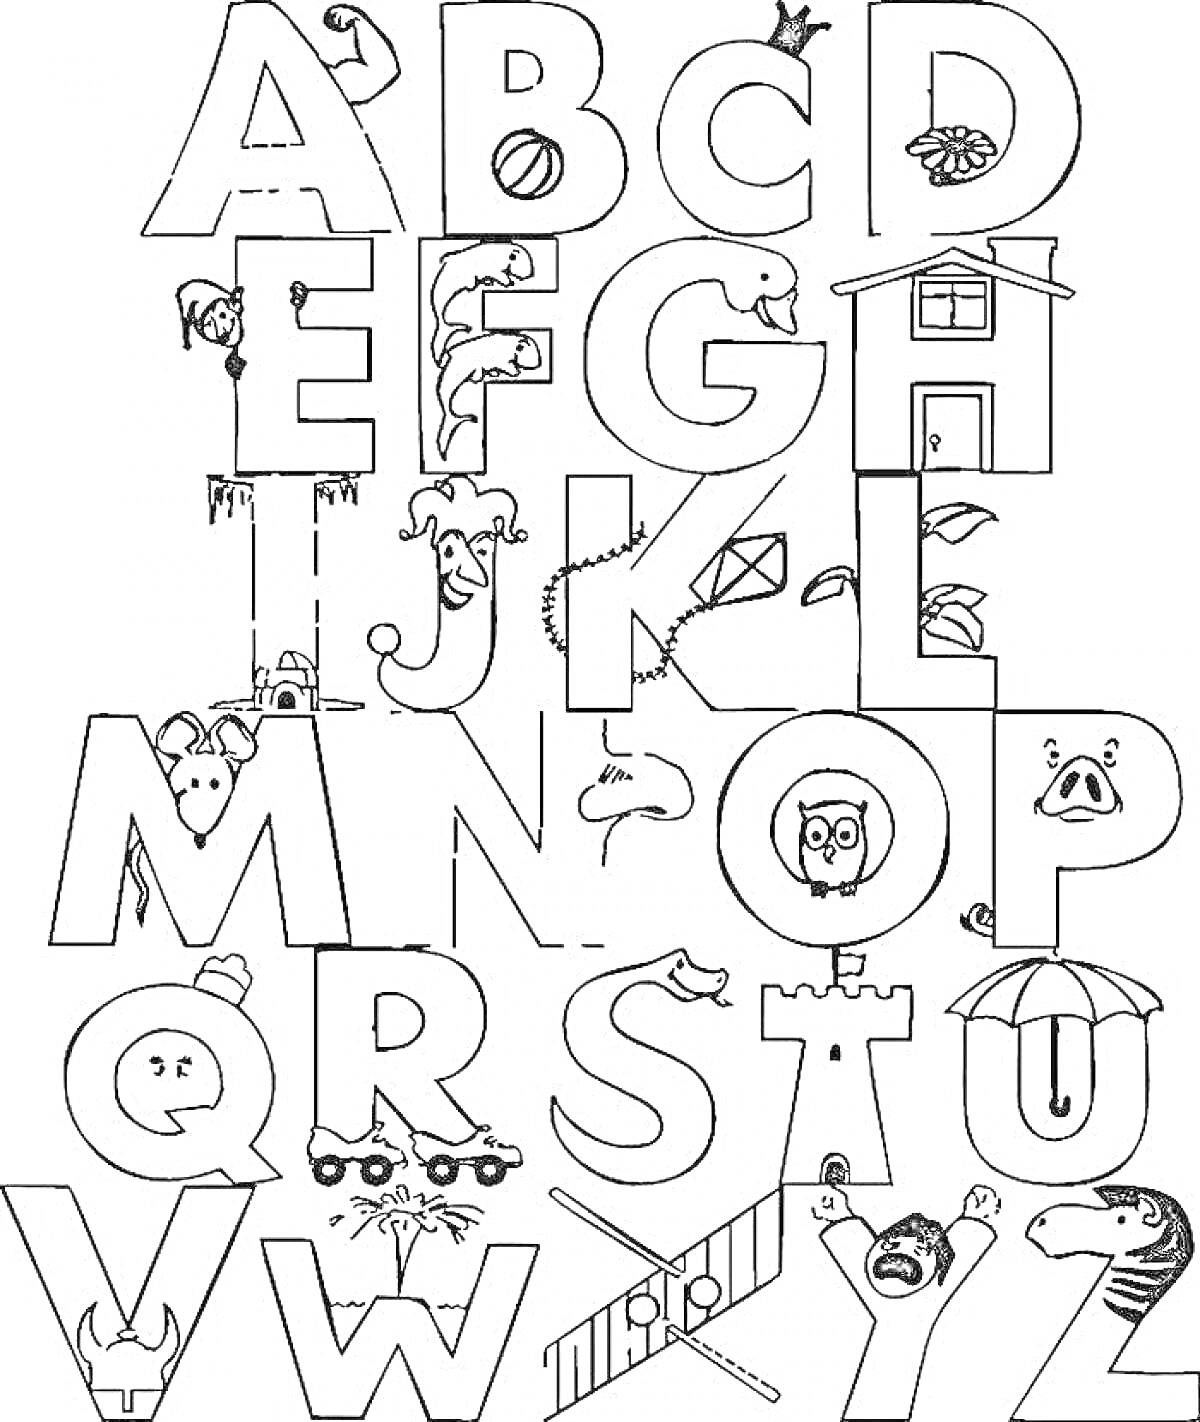 Буквы с изображениями, соответствующими алфавиту: самолет (A), пчела (B), кошка (C), собака (D), яйцо (E), лягушка (F), коза (G), шляпа (H), мороженое (I), клоун (J), воздушный змей (K), лимон (L), мышь (M), гнездо (N), сова (O), свинья (P), королева (Q),